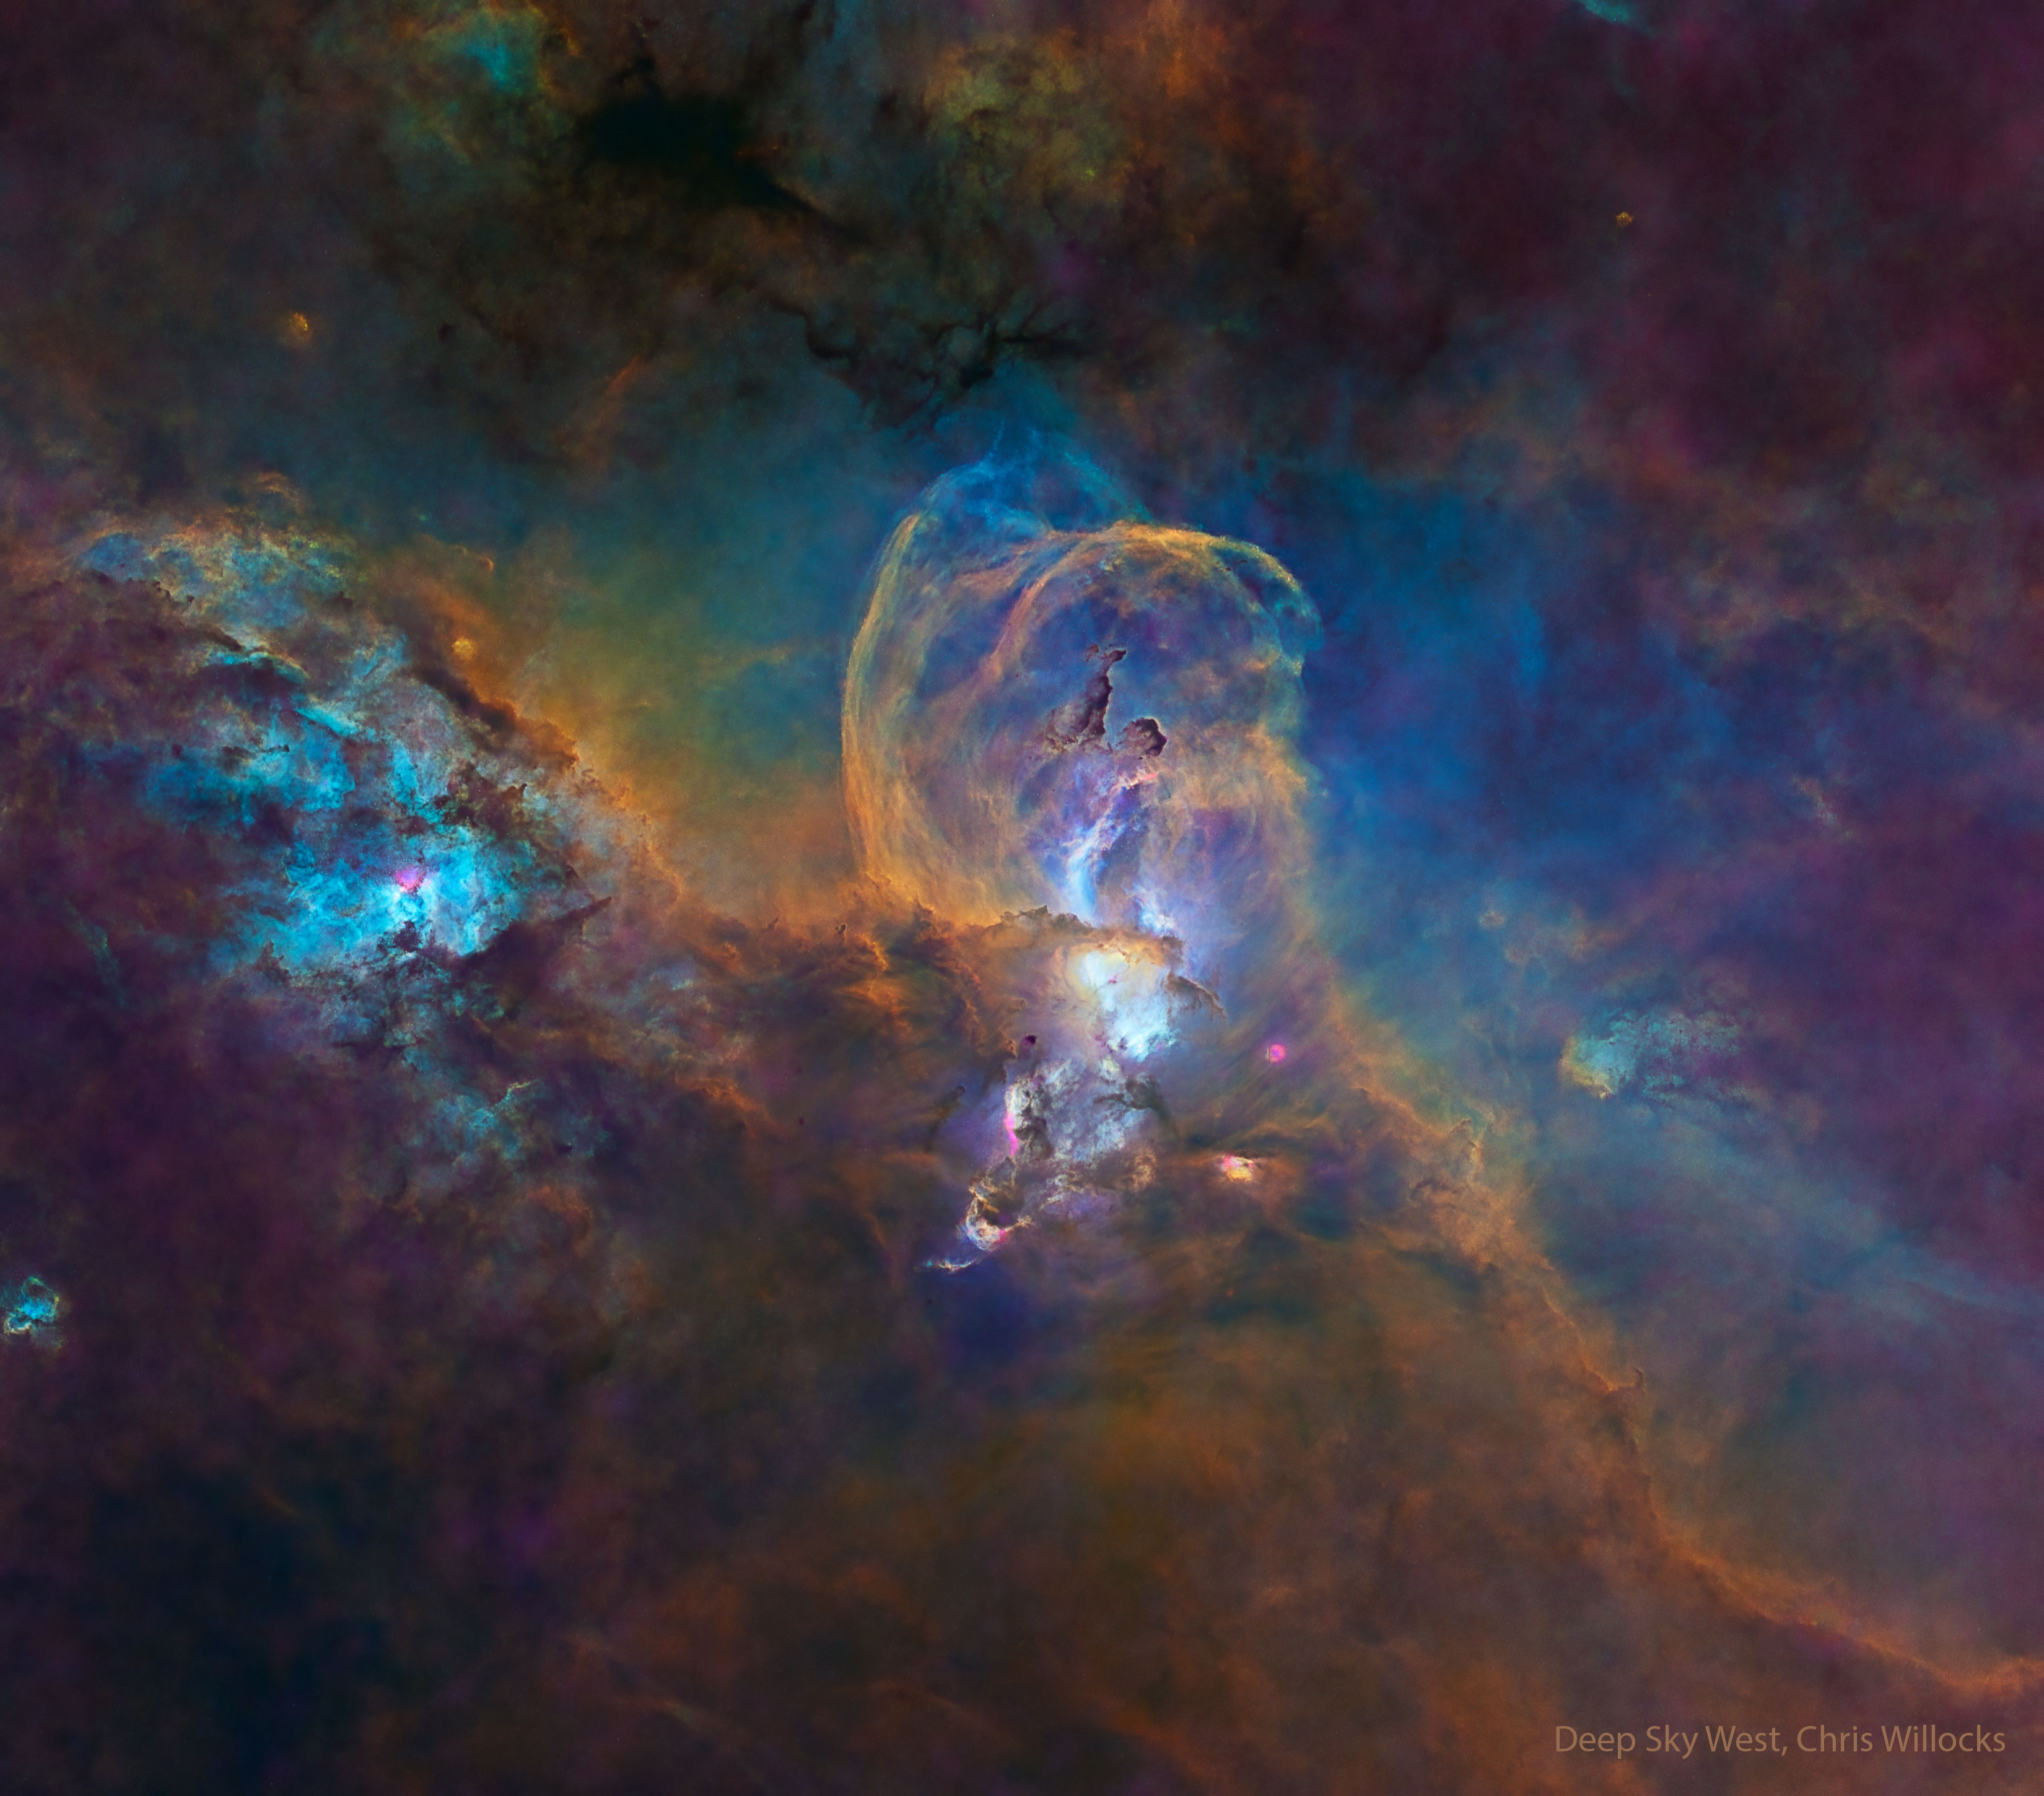 没有恒星的恒星形成区NGC 3582